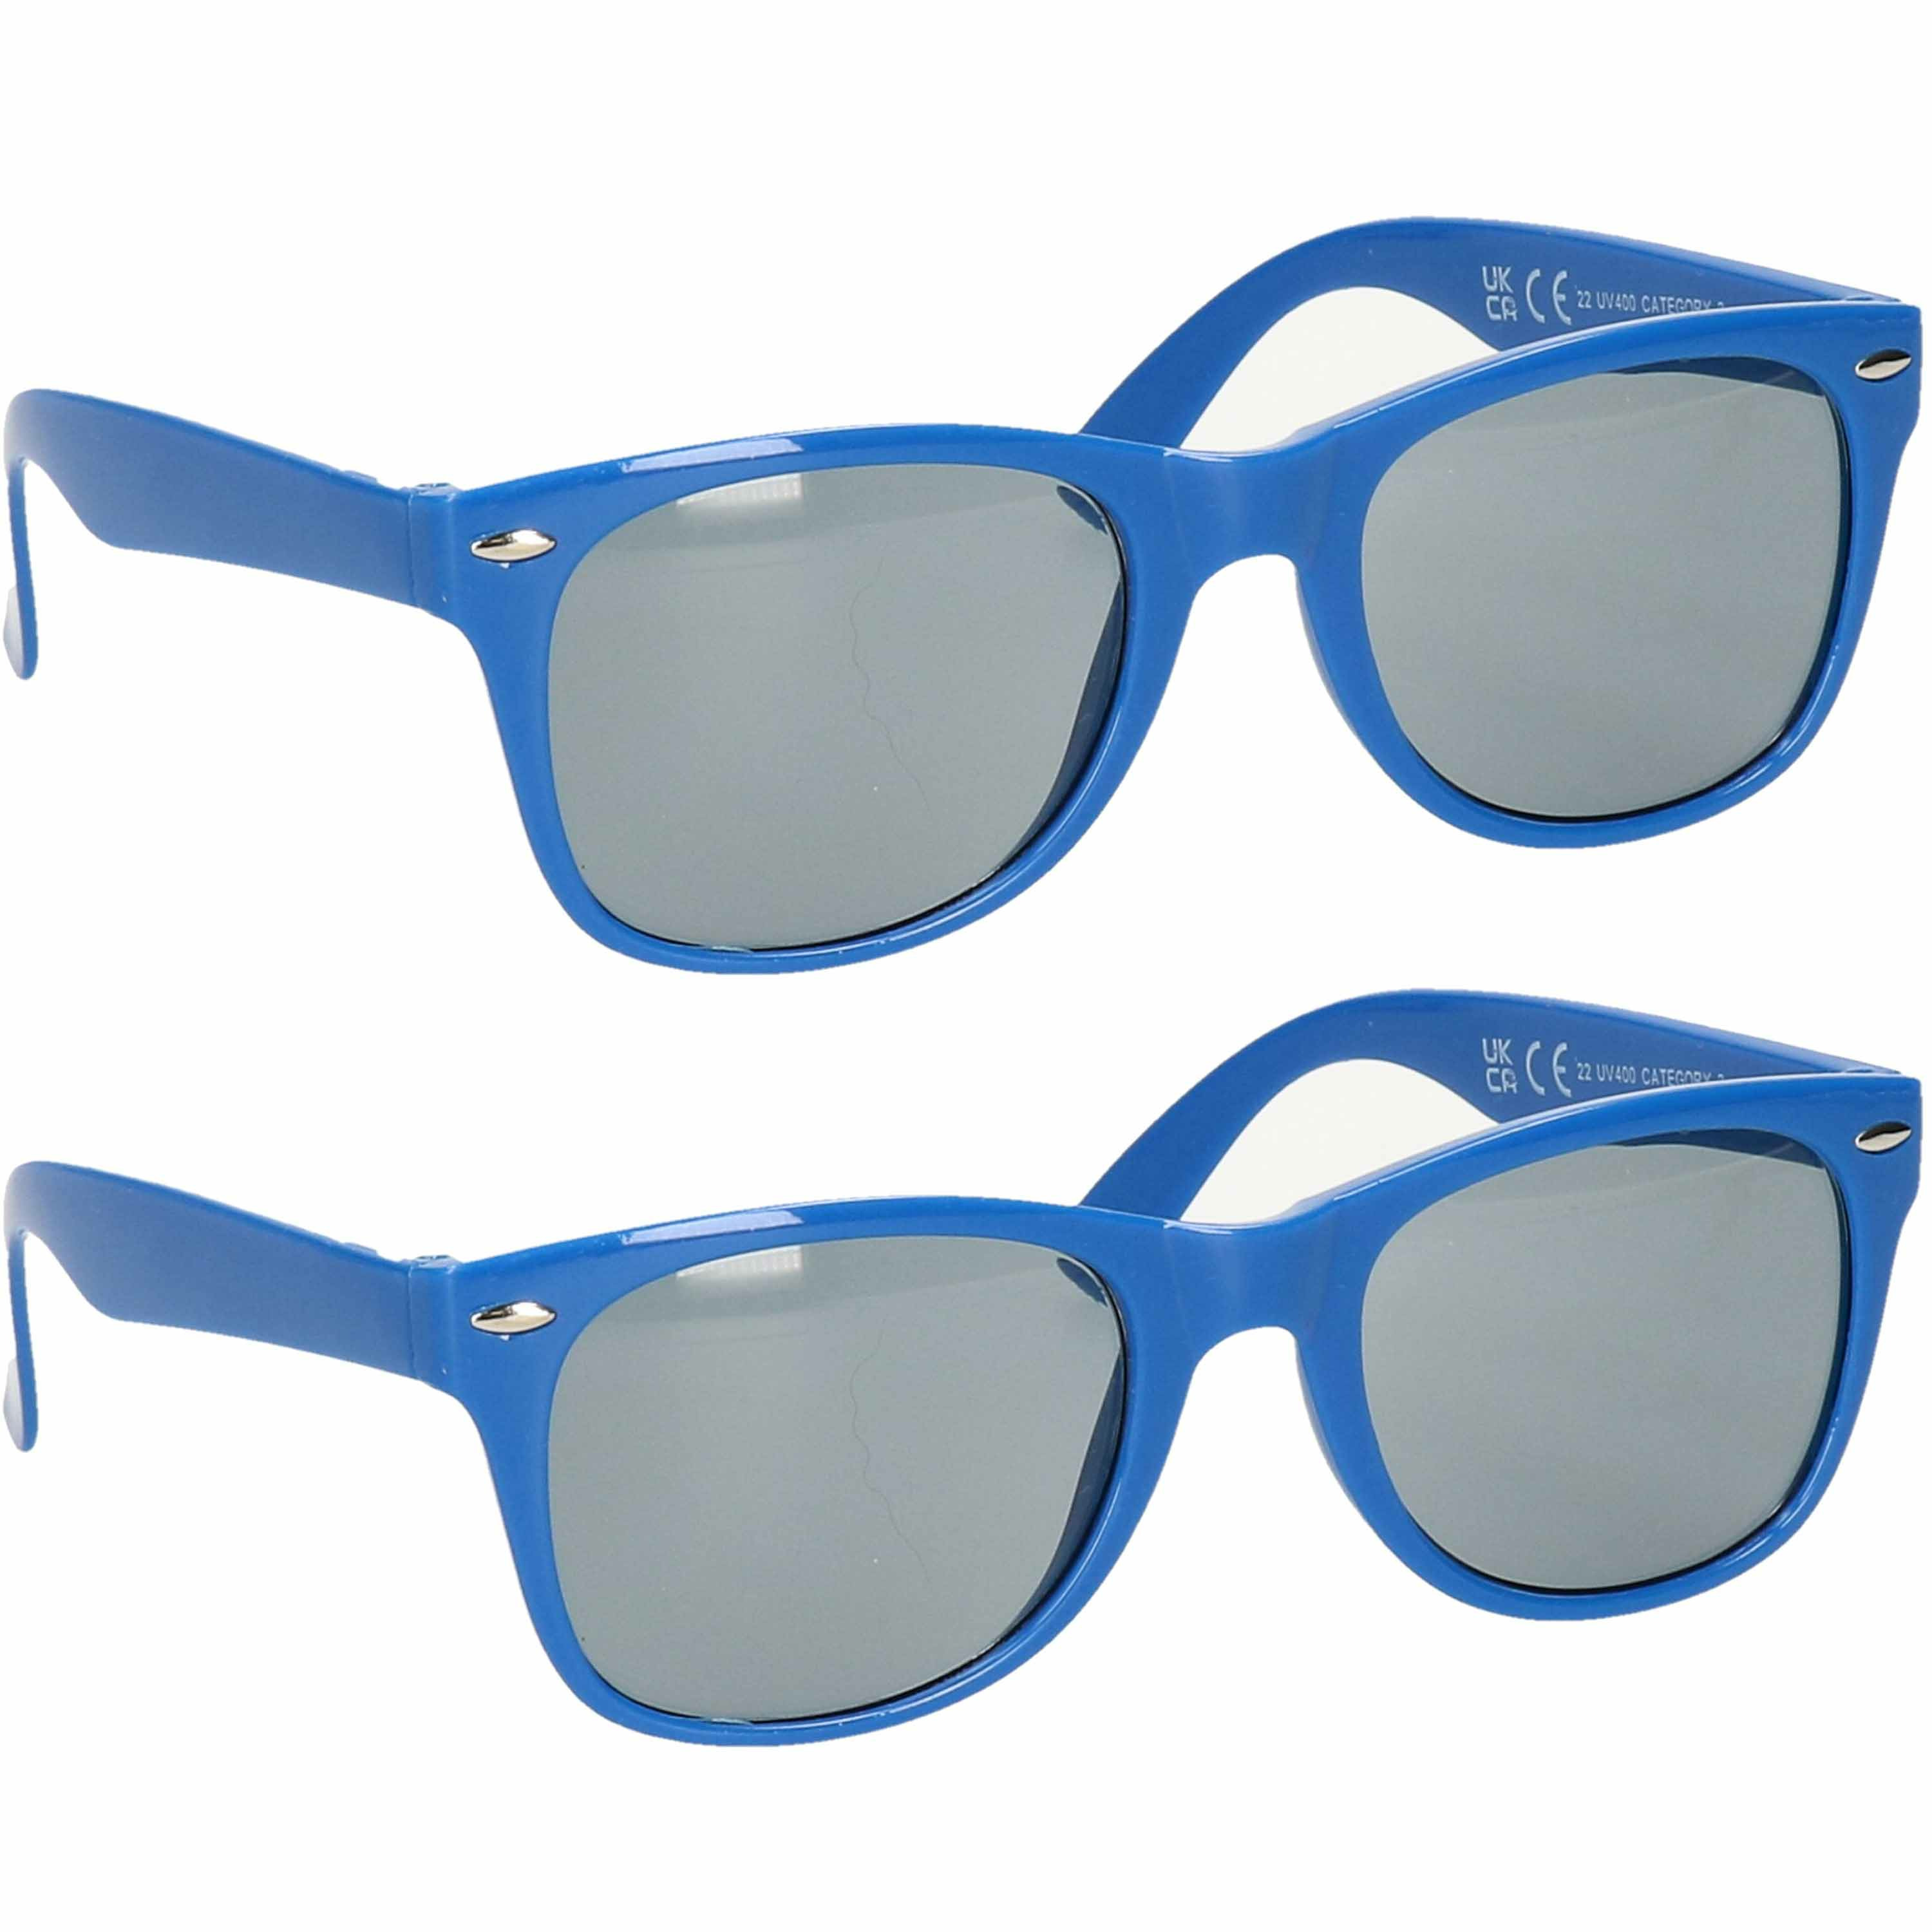 Hippe feest zonnebril met blauw montuur 2x stuks